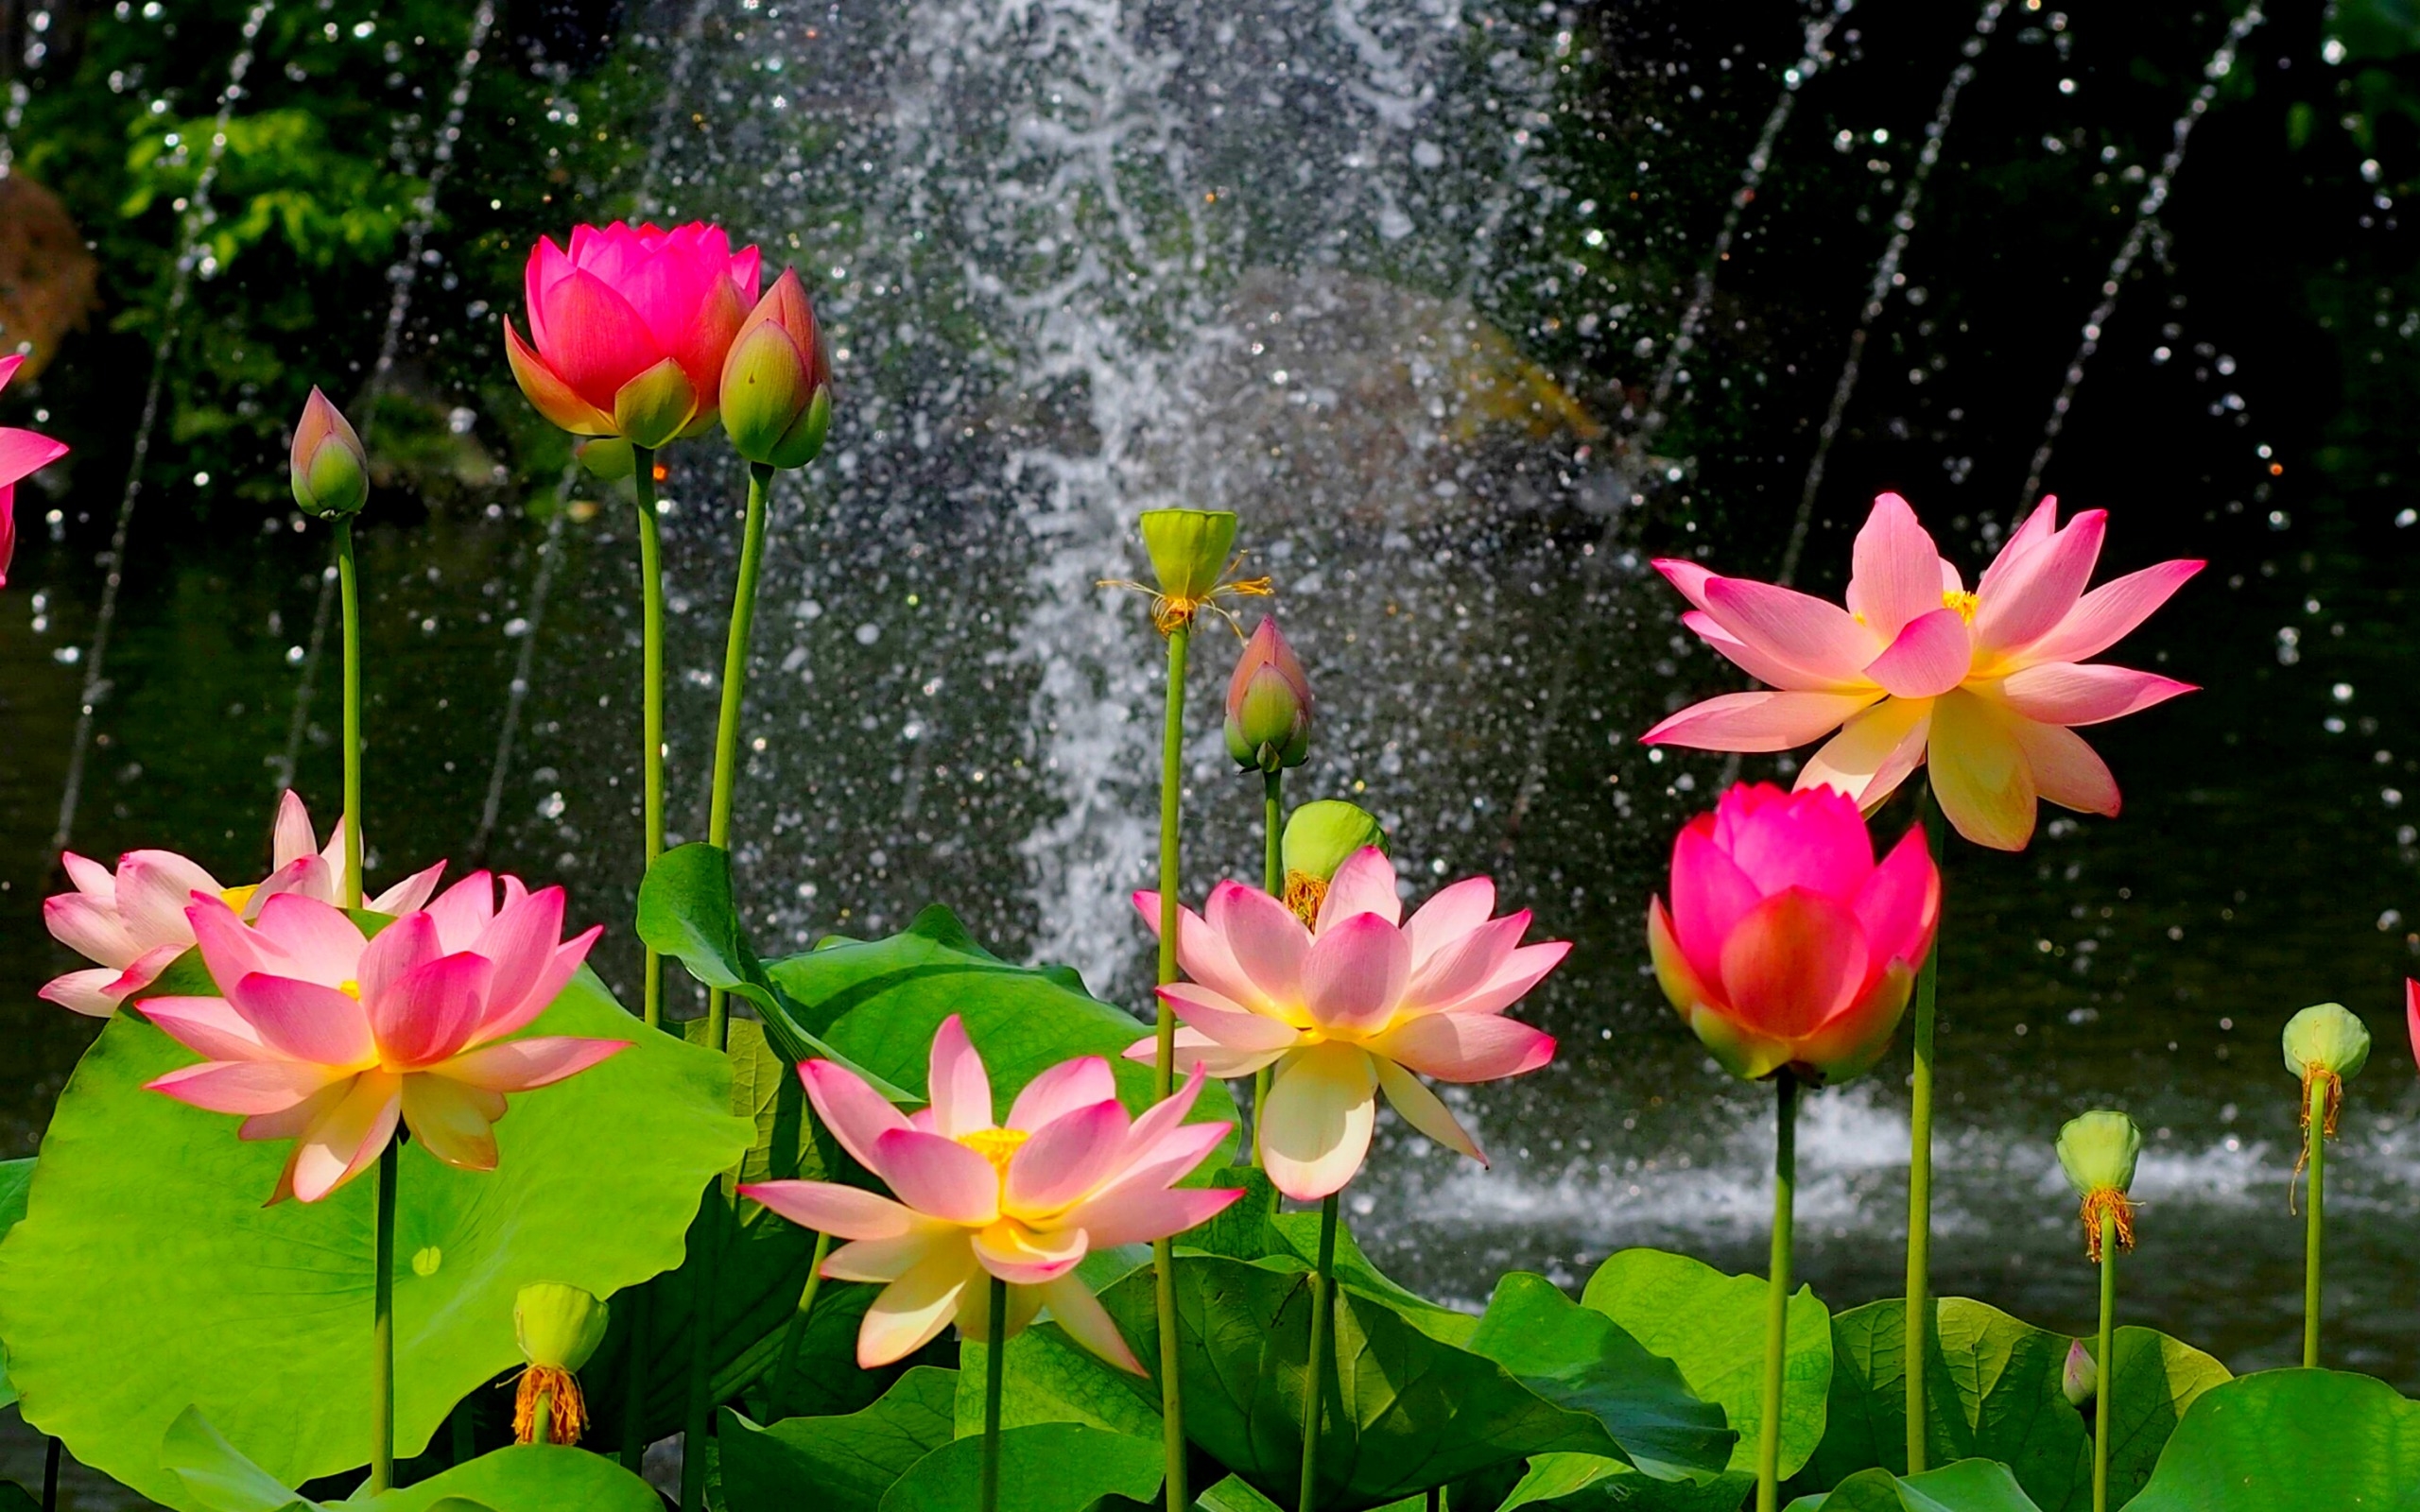 Lotus Flower Wallpaper Hd Download Of Pink Lotus Flower 2560x1600 :  